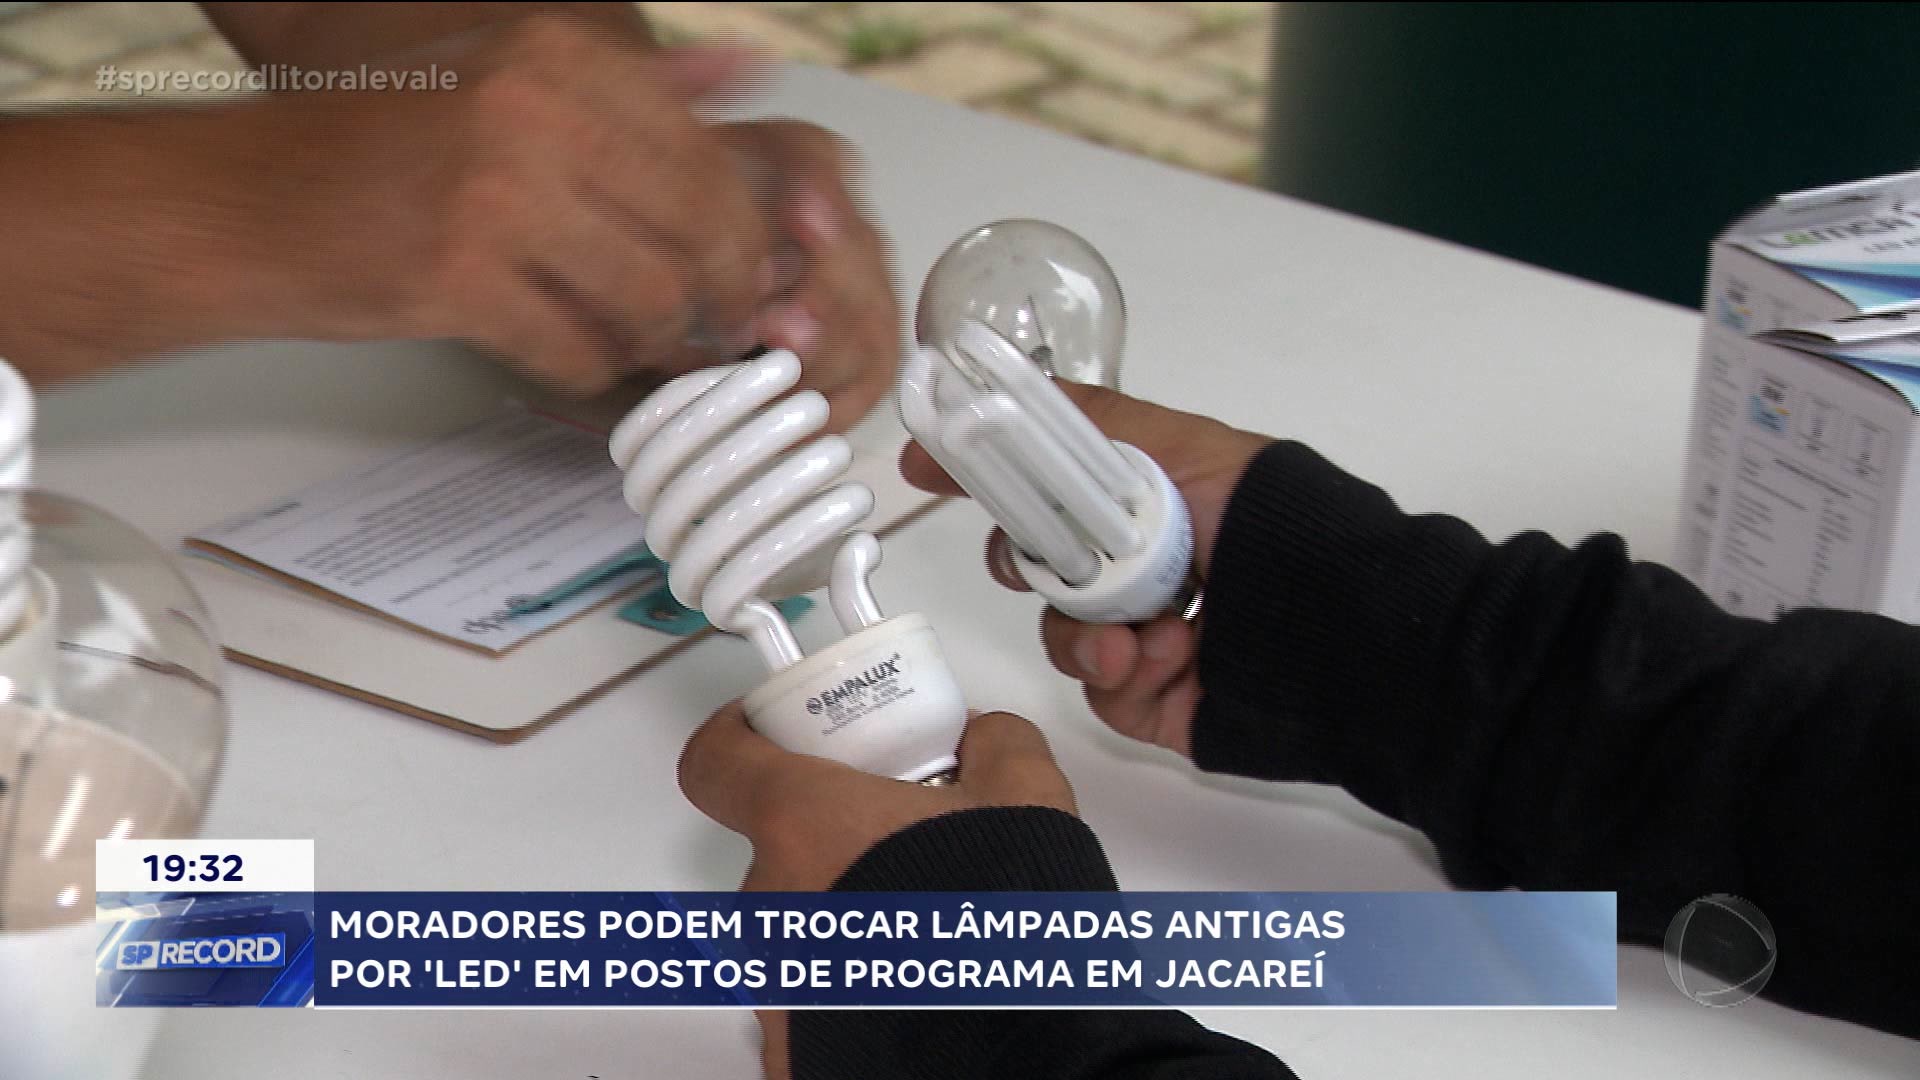 Vídeo: Programa incentiva troca de lâmpadas antigas